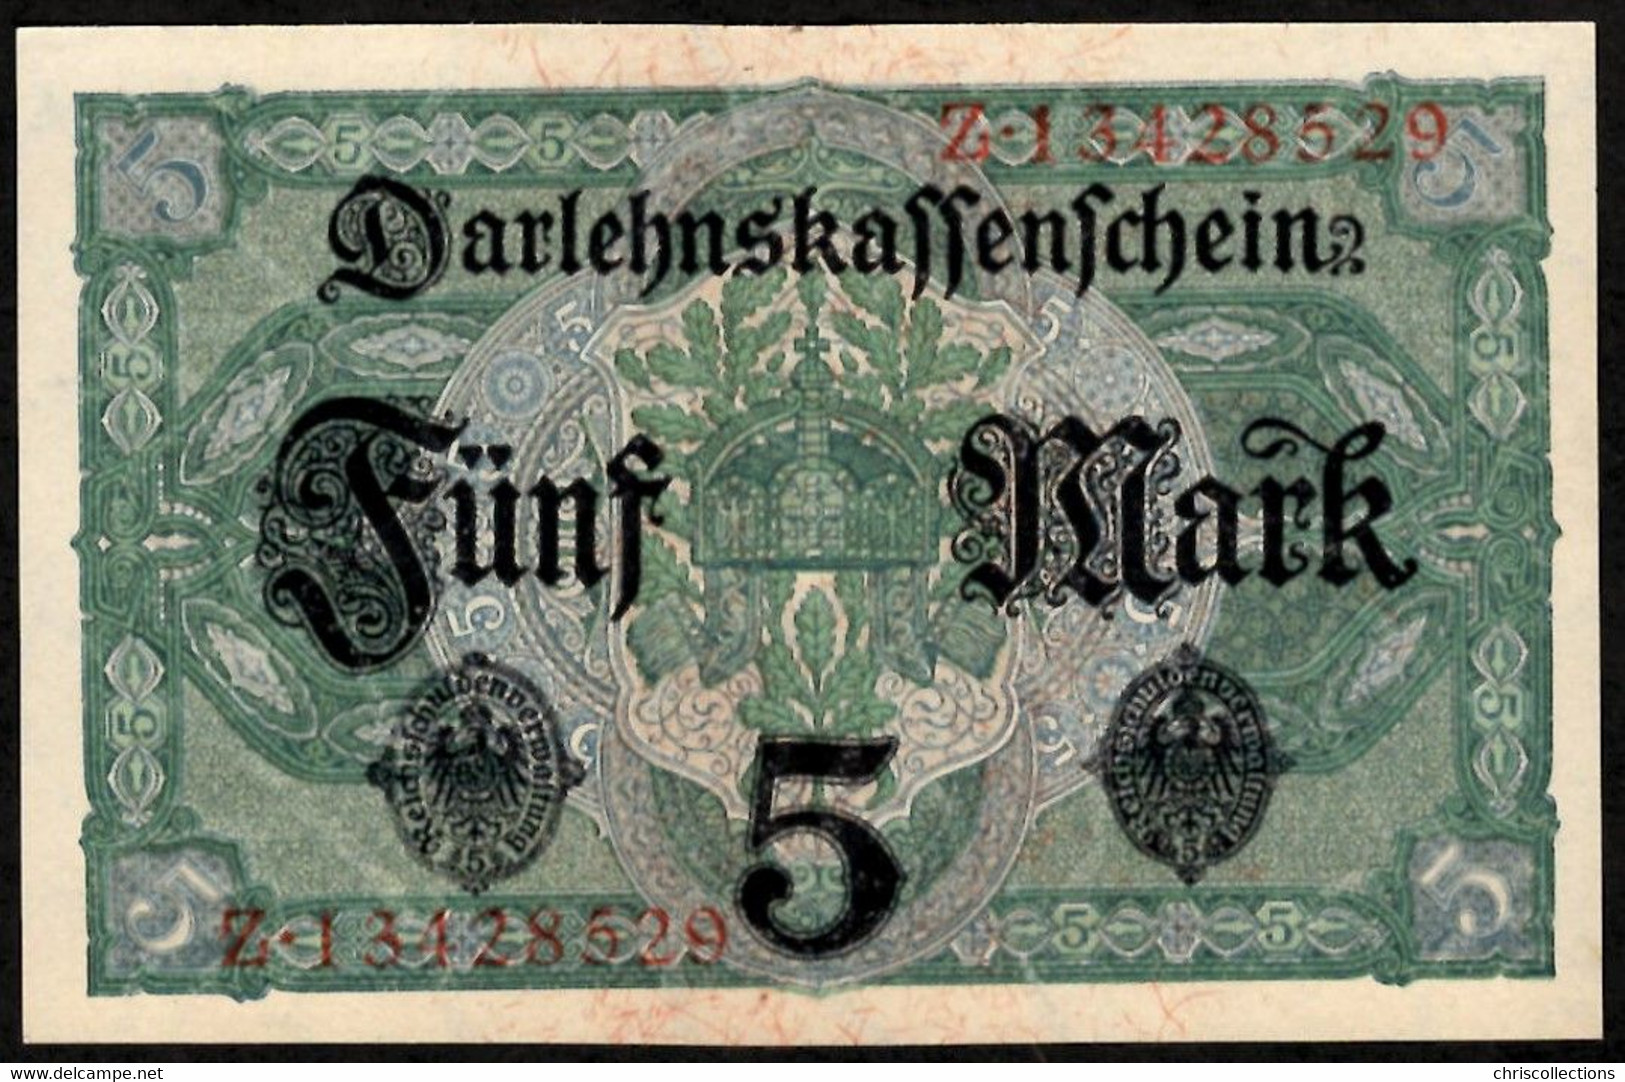 ALLEMAGNE - 5 Mark -  Berlin 1.8.1917 - Darlehnskaffenfchein - Sup+ - 5 Mark